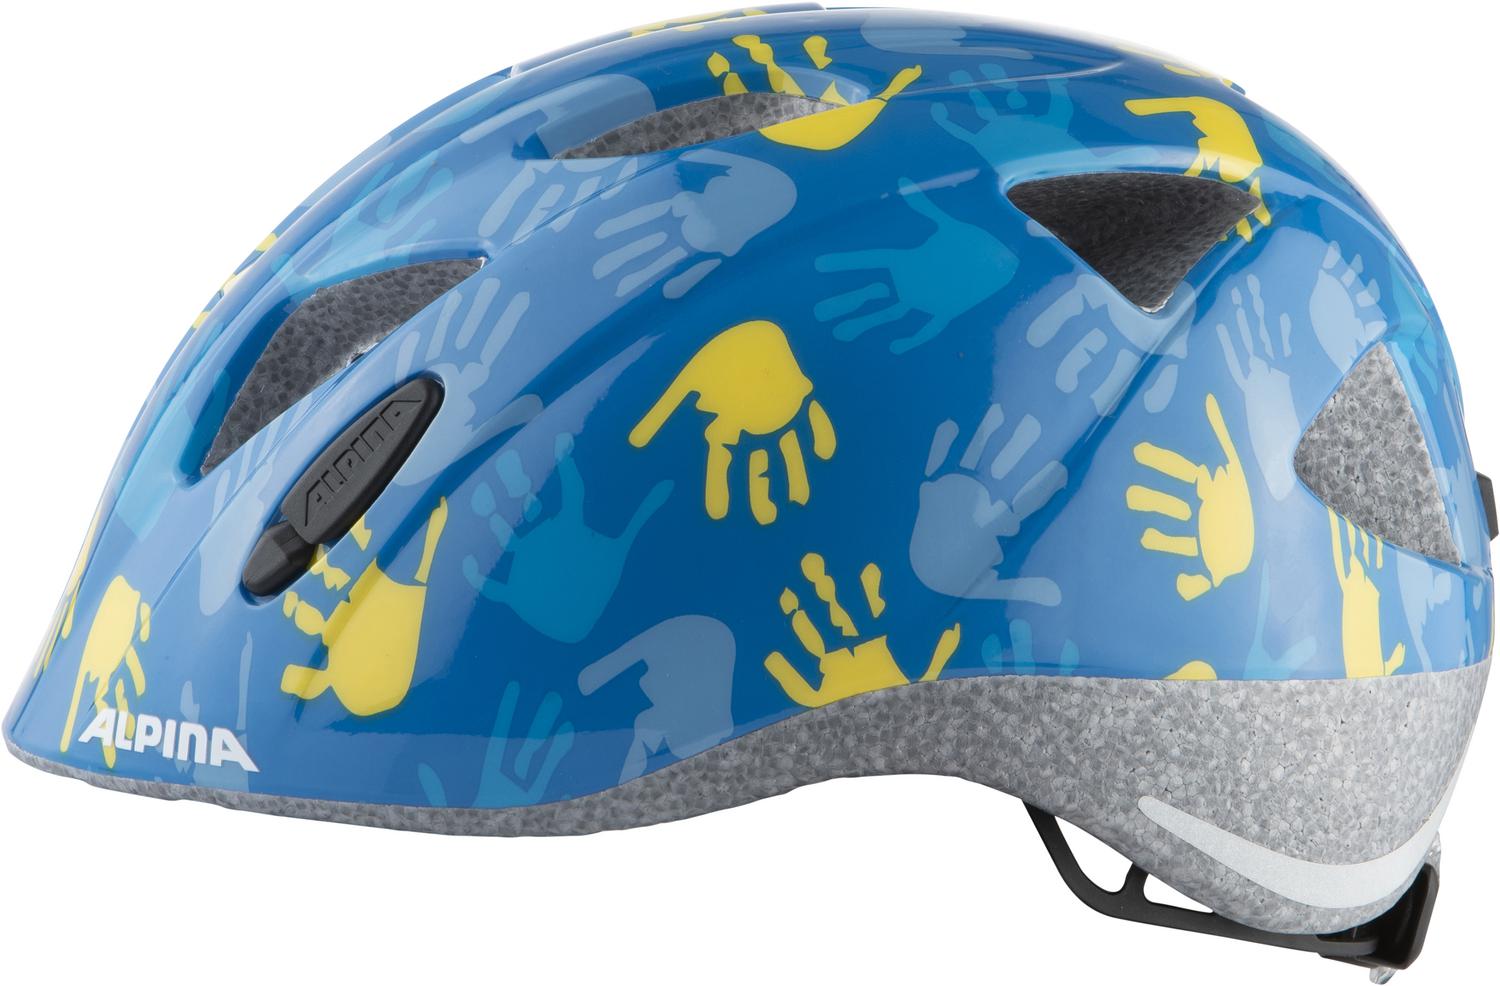 Велосипедный шлем Alpina Ximo, blue hands gloss, M